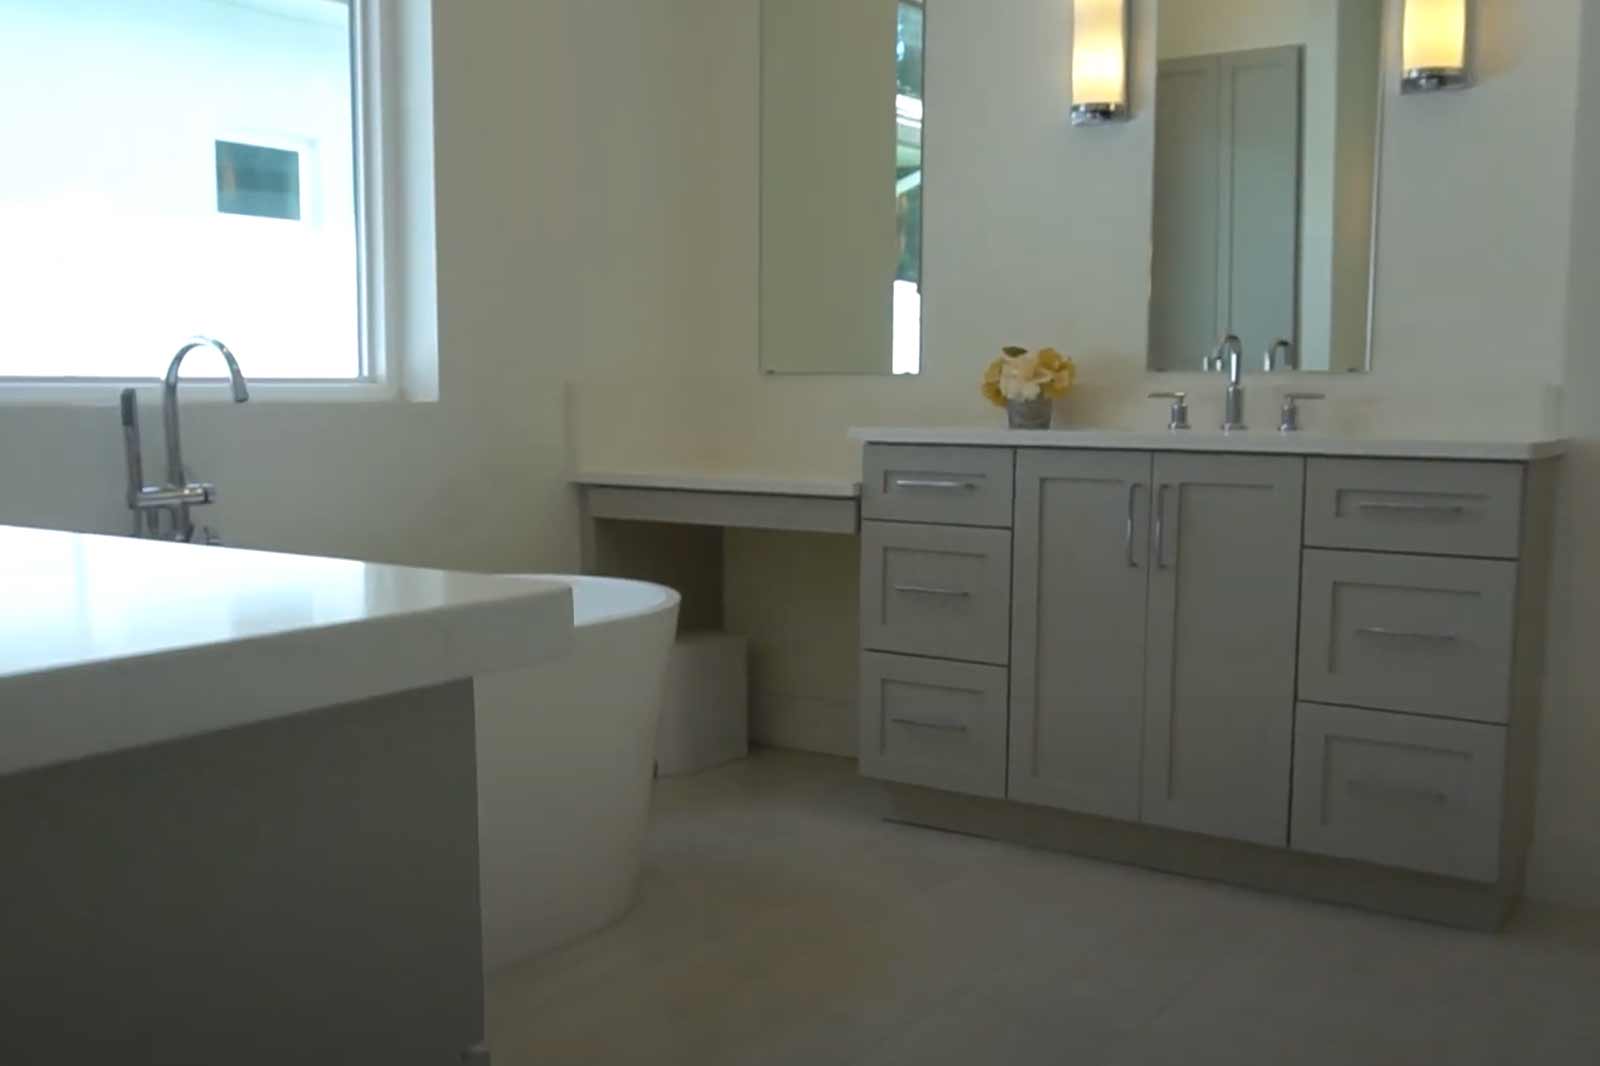 bathroom-tampa-cabinets-custom-diseno-banos-renovacion-cocinas